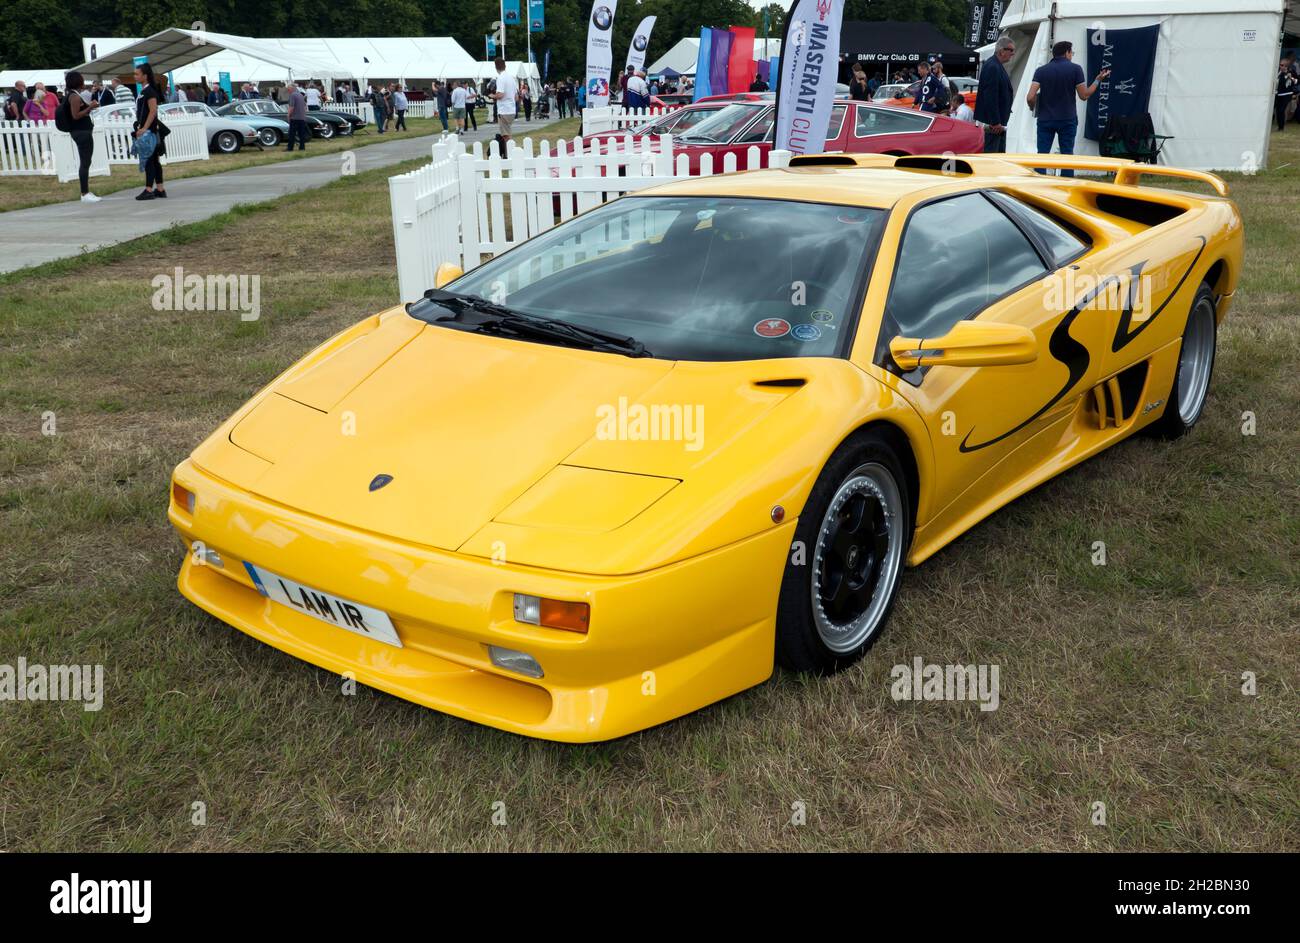 Vue de trois quarts avant d'un 1997, jaune, Lamborghini Diablo Super Veloce,  exposé au salon de l'auto de Londres 2021 Photo Stock - Alamy